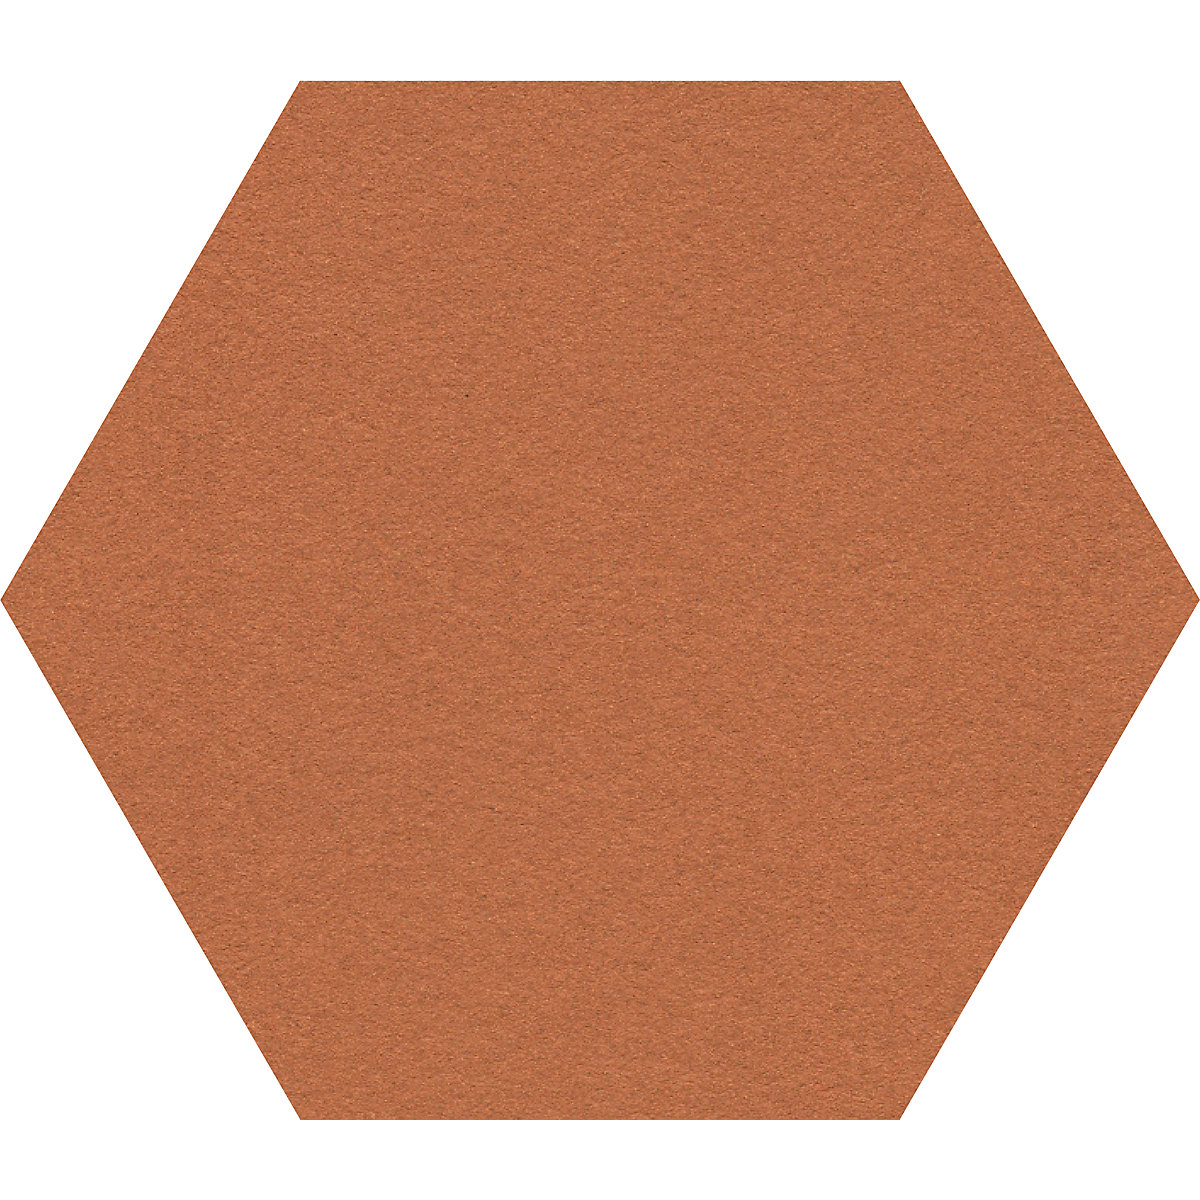 Tableau à épingles design hexagonal – Chameleon: liège